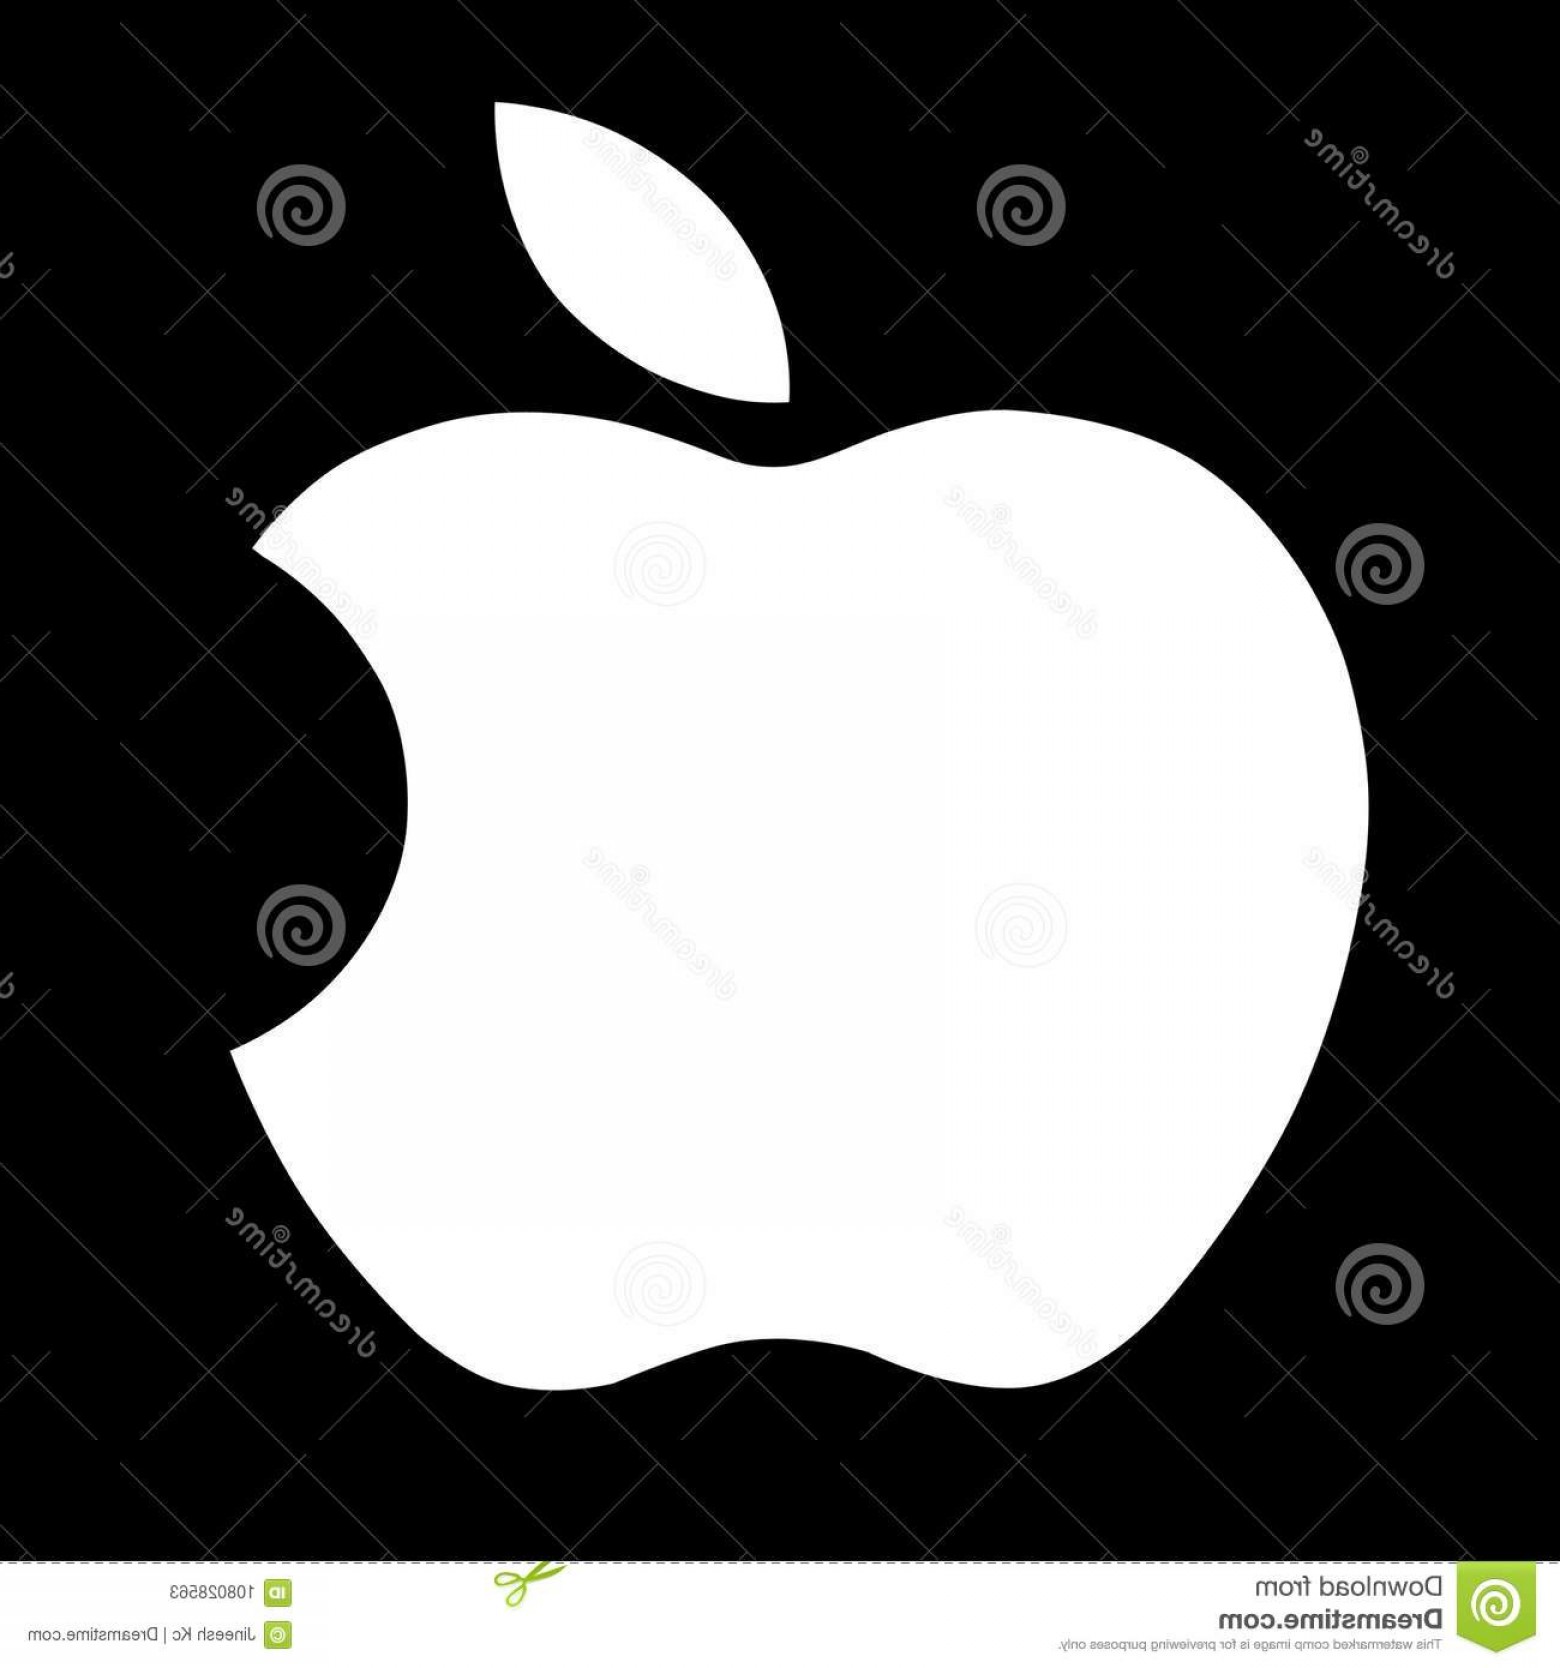 Apple Logo Vector at Vectorified.com | Collection of Apple Logo Vector ...